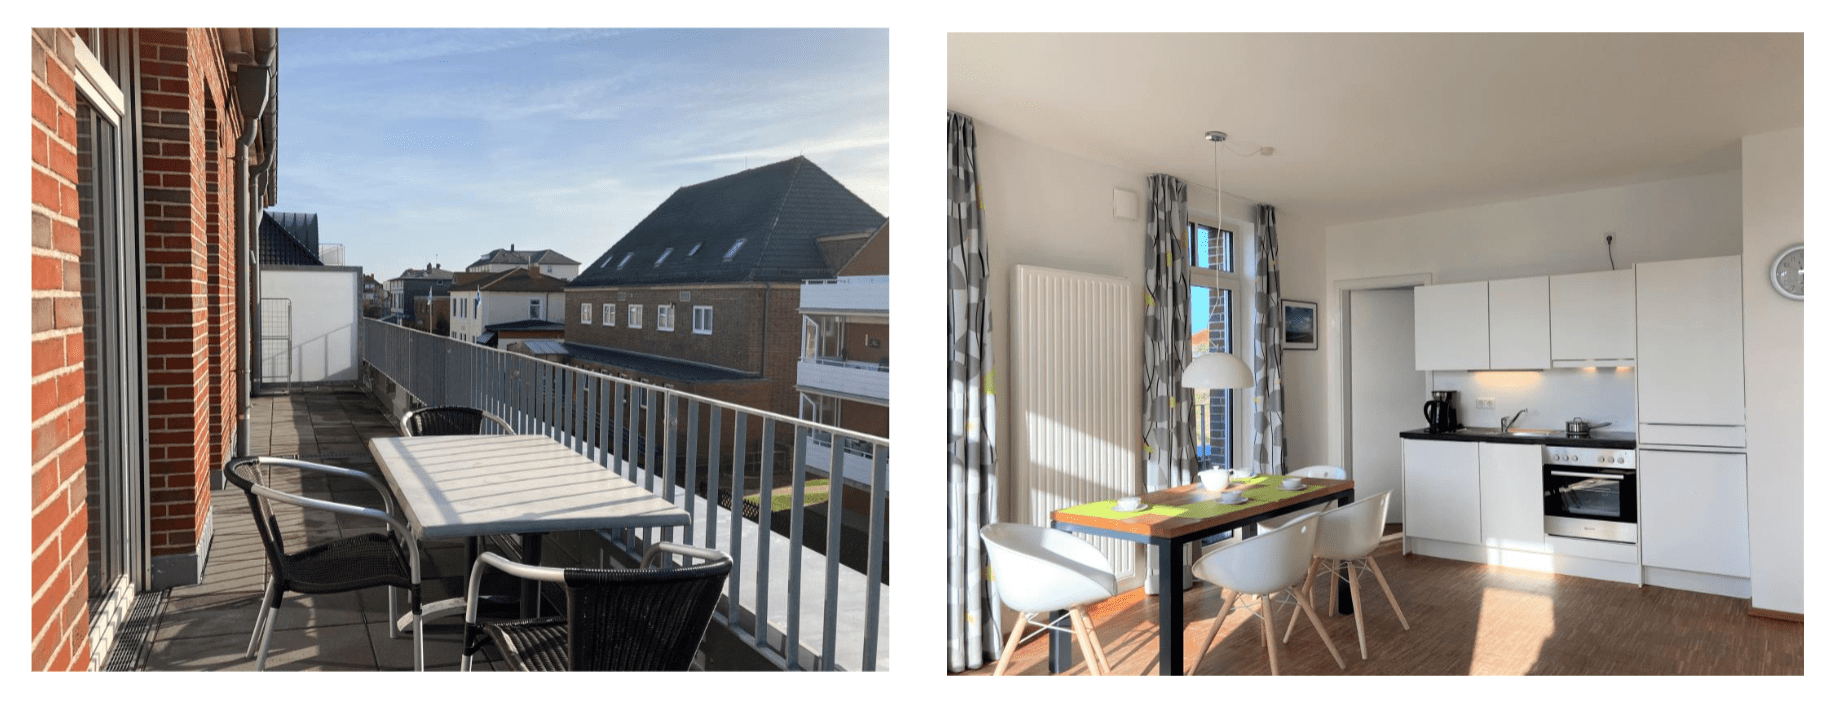 Ferienwohnung Wangerooge - Balkon und Küche